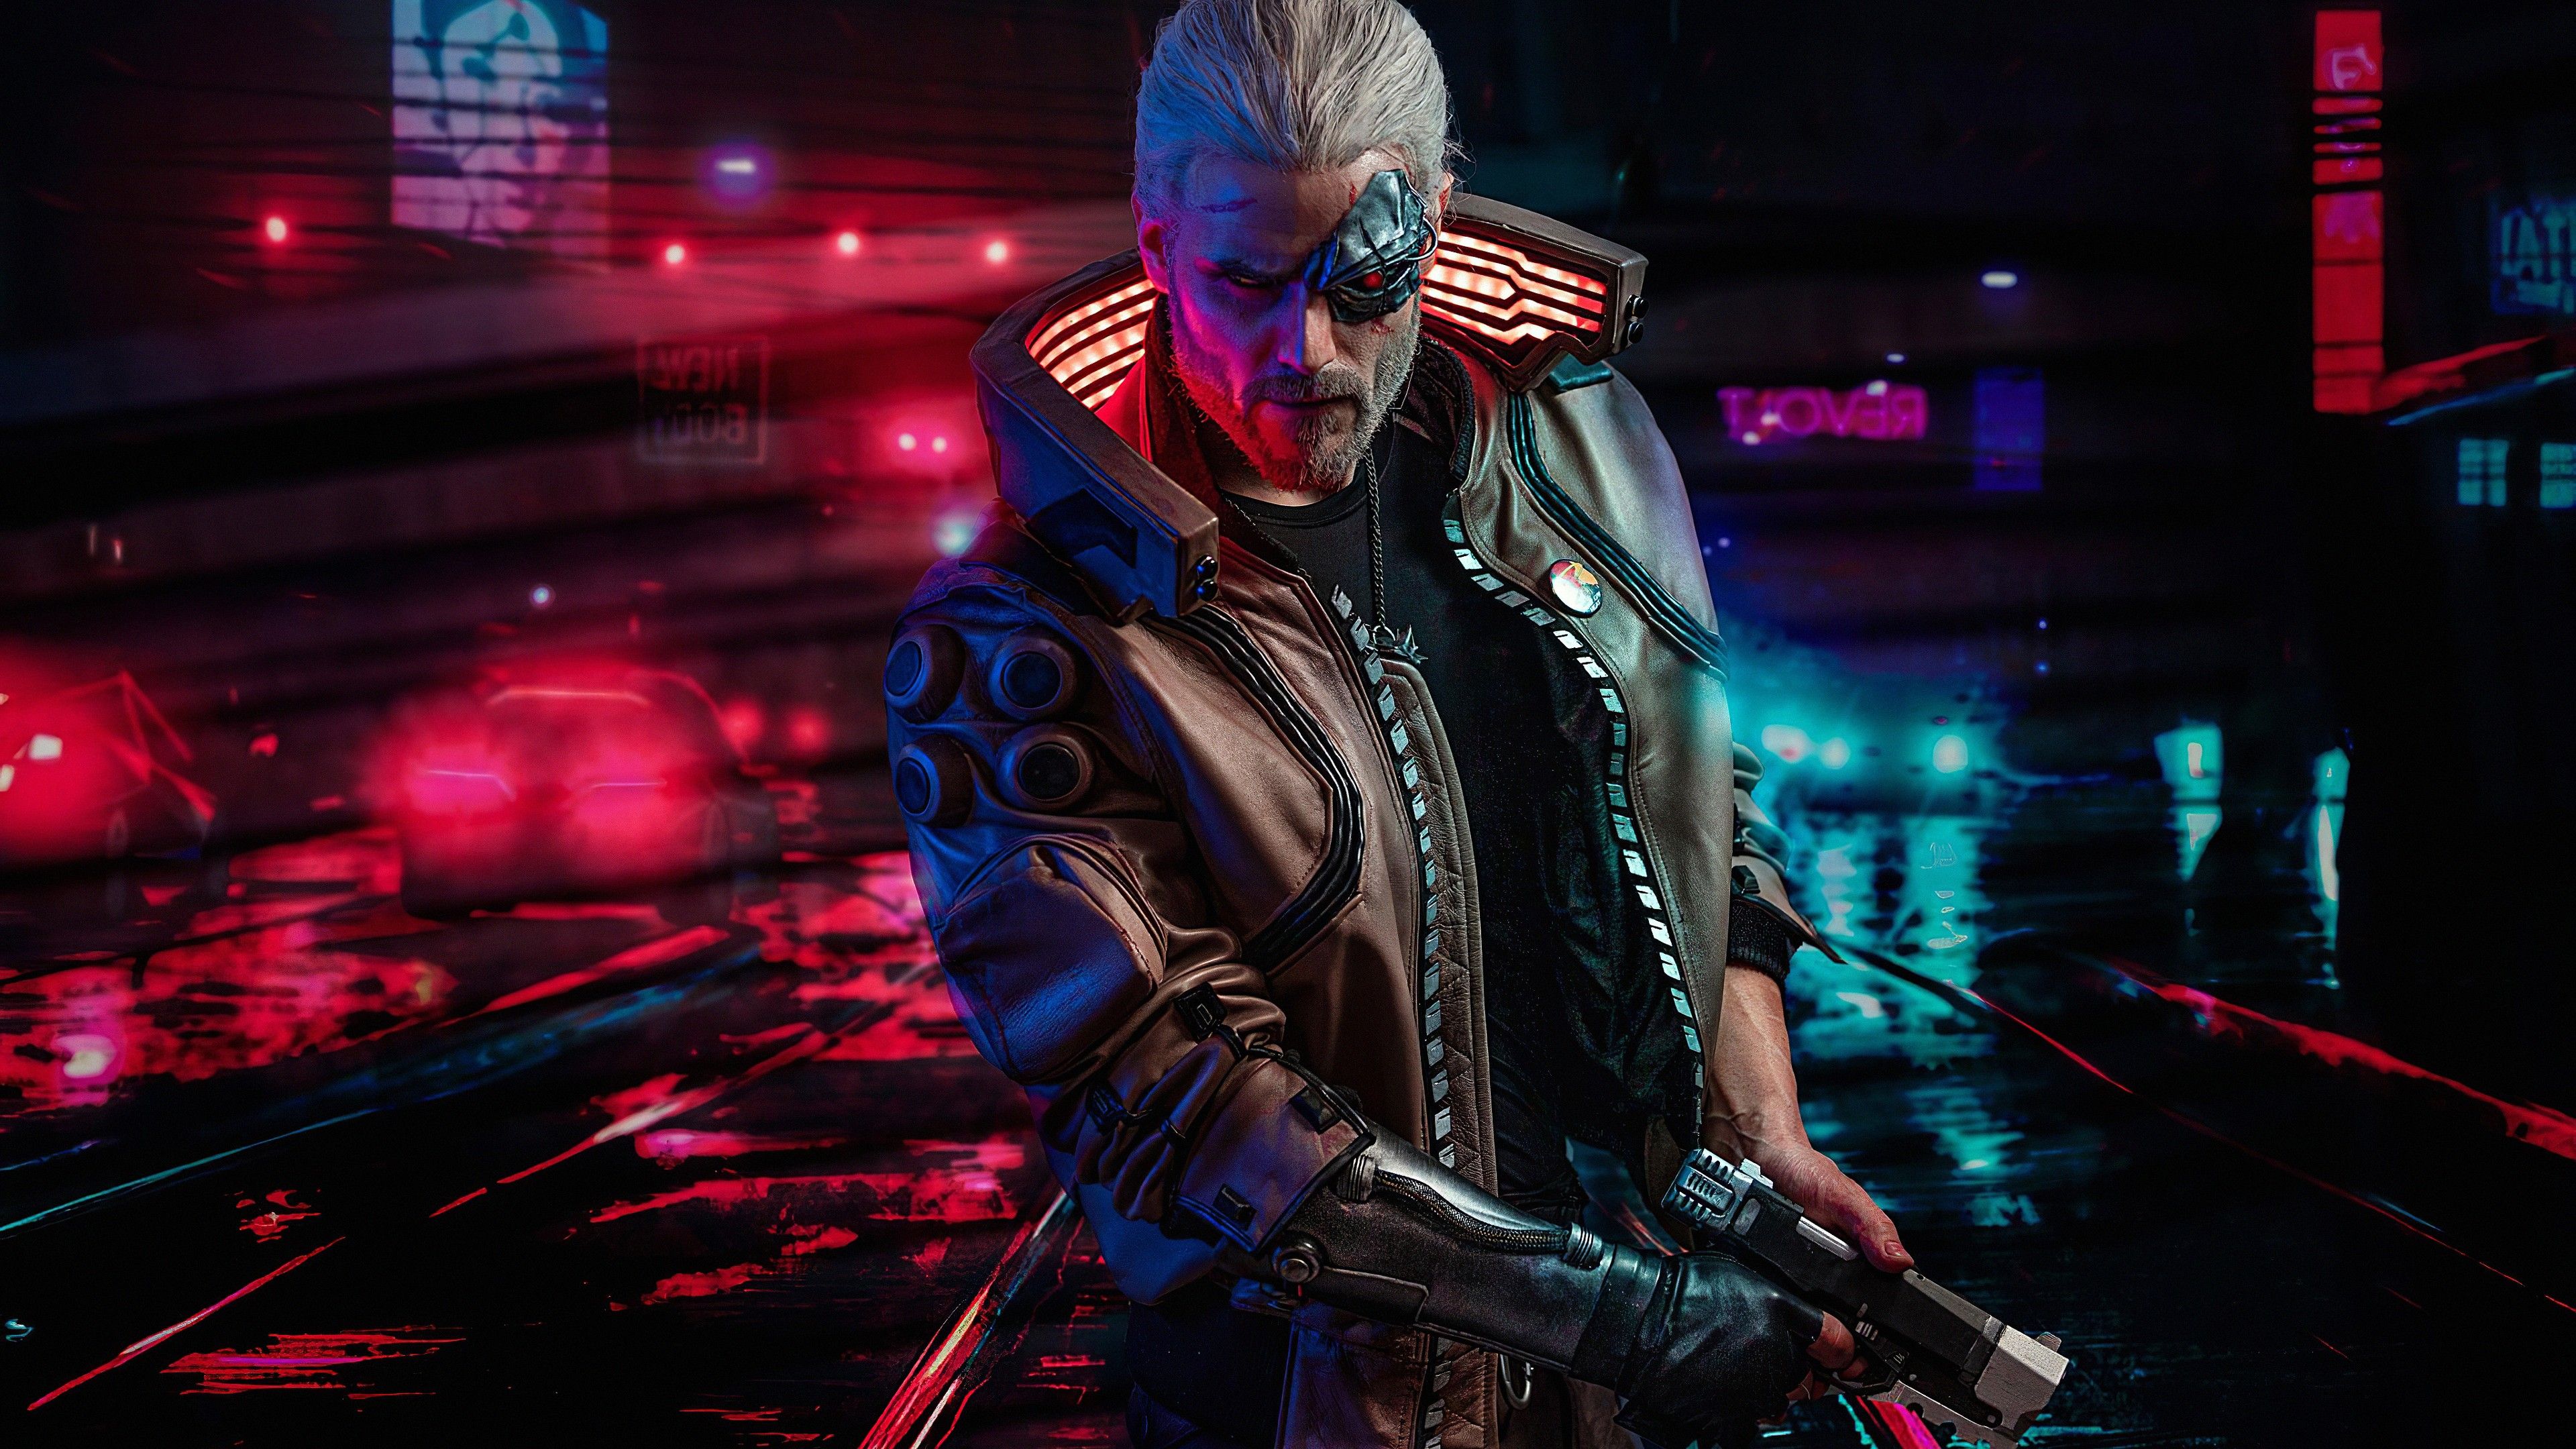 Cyberpunk 2077 4K Wallpaper, Geralt of Rivia, The Witcher, Graphics CGI